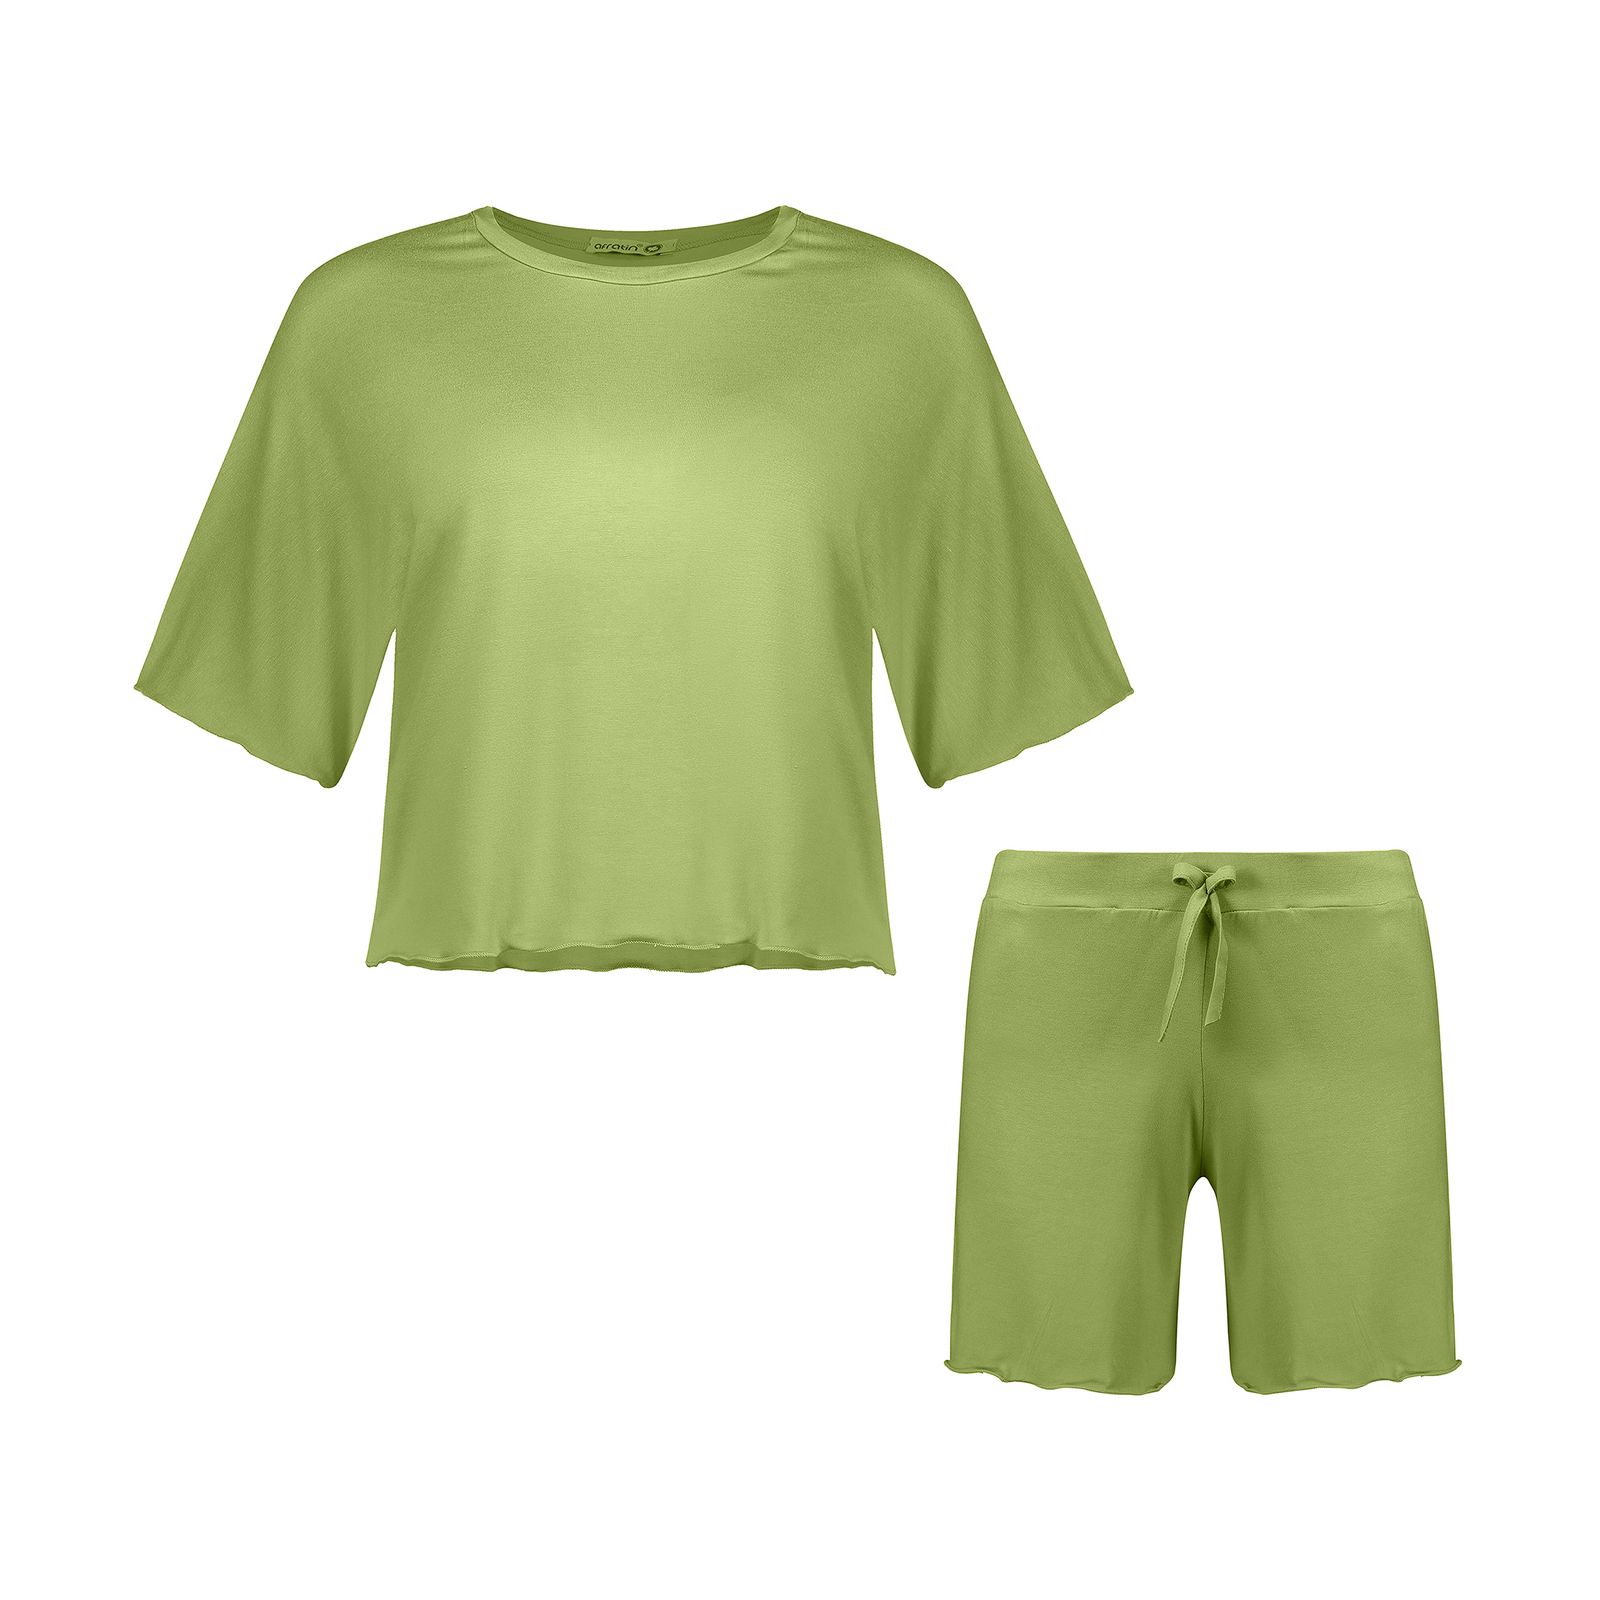 ست تیشرت و شلوارک زنانه افراتین مدل آرام رنگ سبز -  - 1